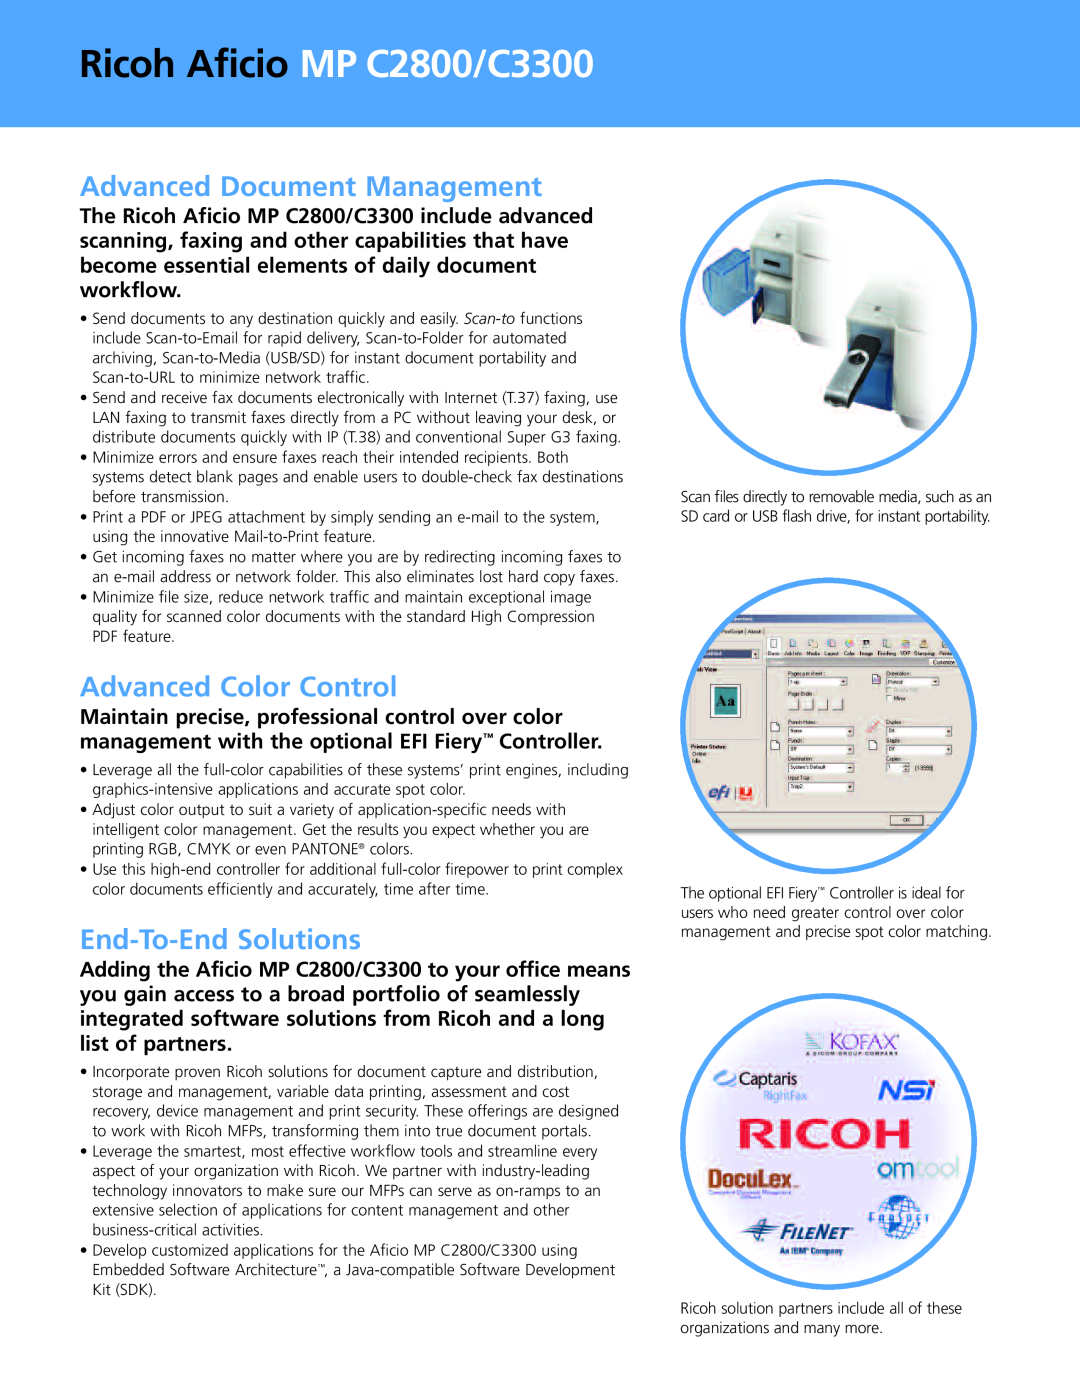 Ricoh MP C3300 Advanced Document Management, Advanced Color Control, End-To-End Solutions, Ricoh Aficio MP C2800/C3300 